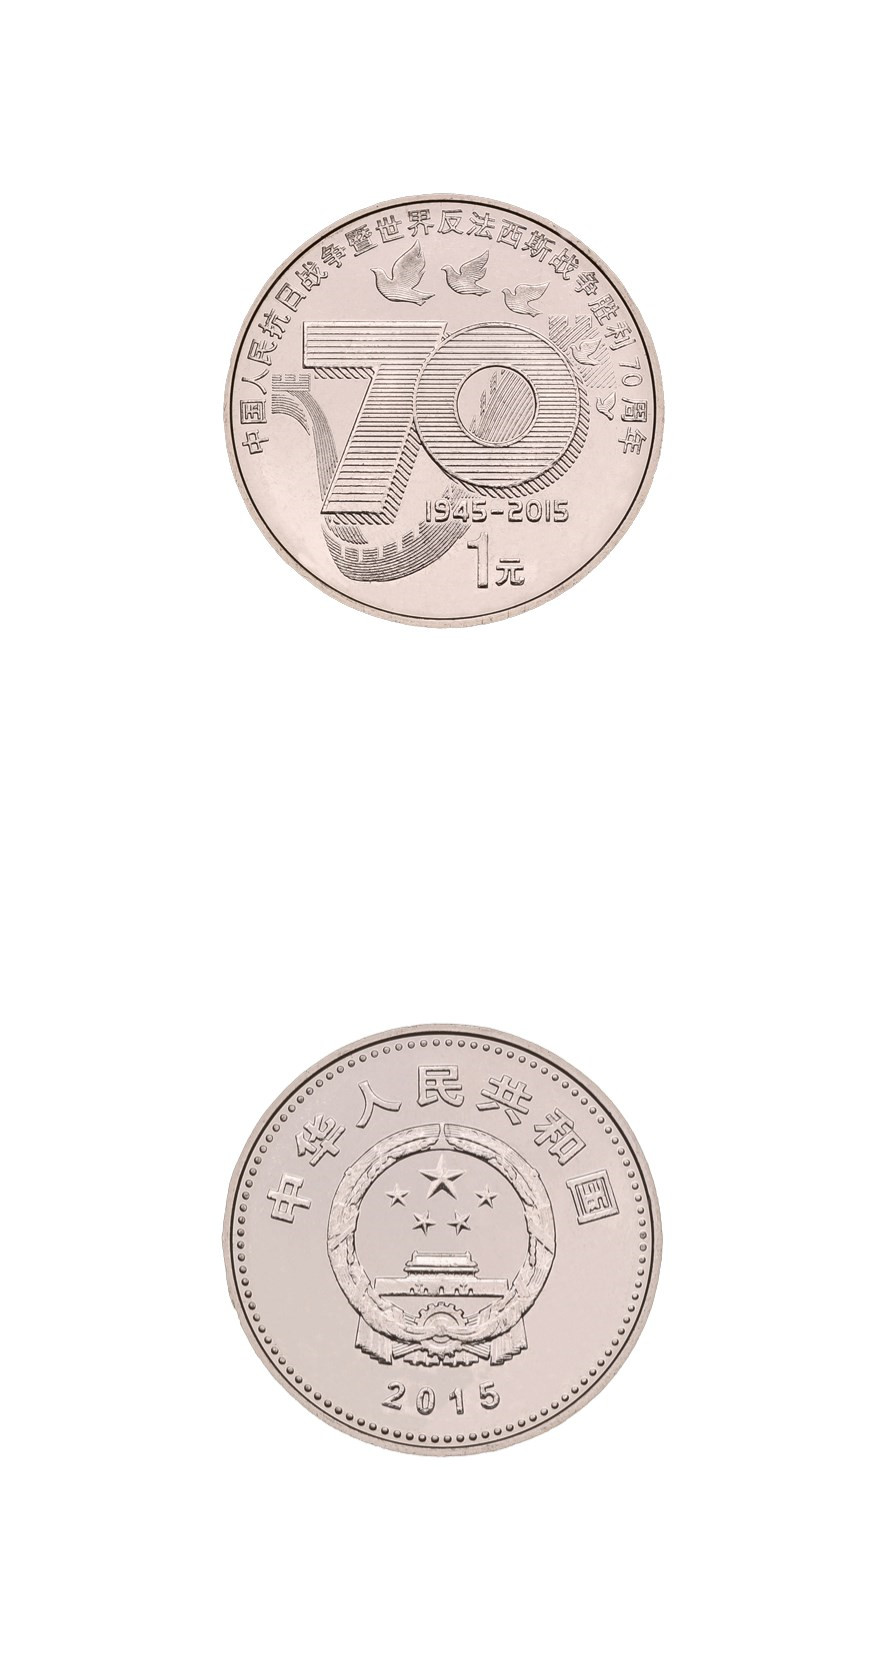 抗战胜利70周年纪念币(流通纪念币简介及投资行情-第九十一套抗战70周年)